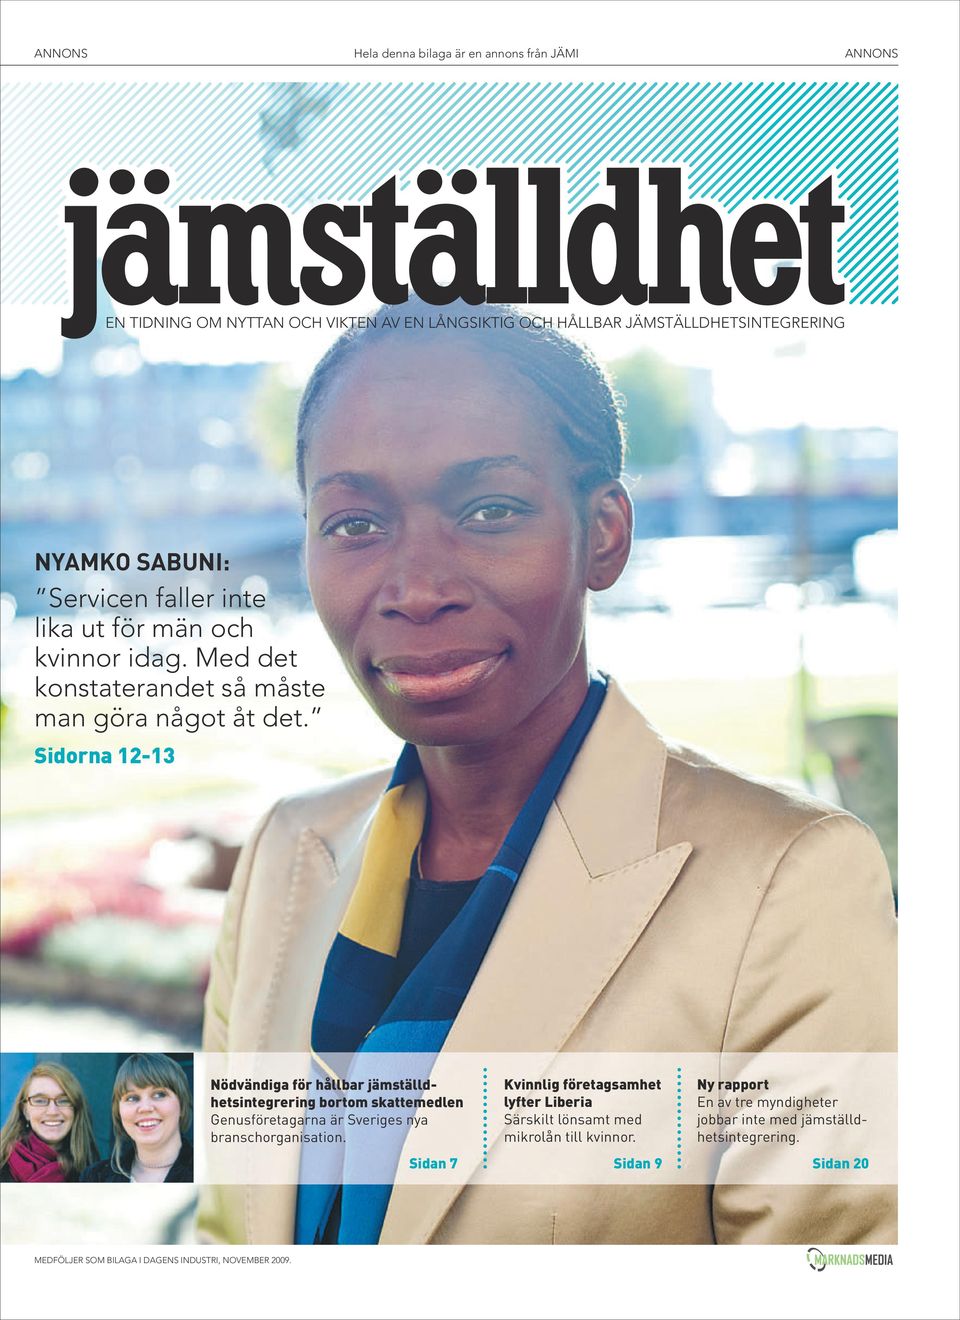 Sidorna 12-13 Nödvändiga för hållbar jämställdhetsintegrering bortom skattemedlen Genusföretagarna är Sveriges nya branschorganisation.